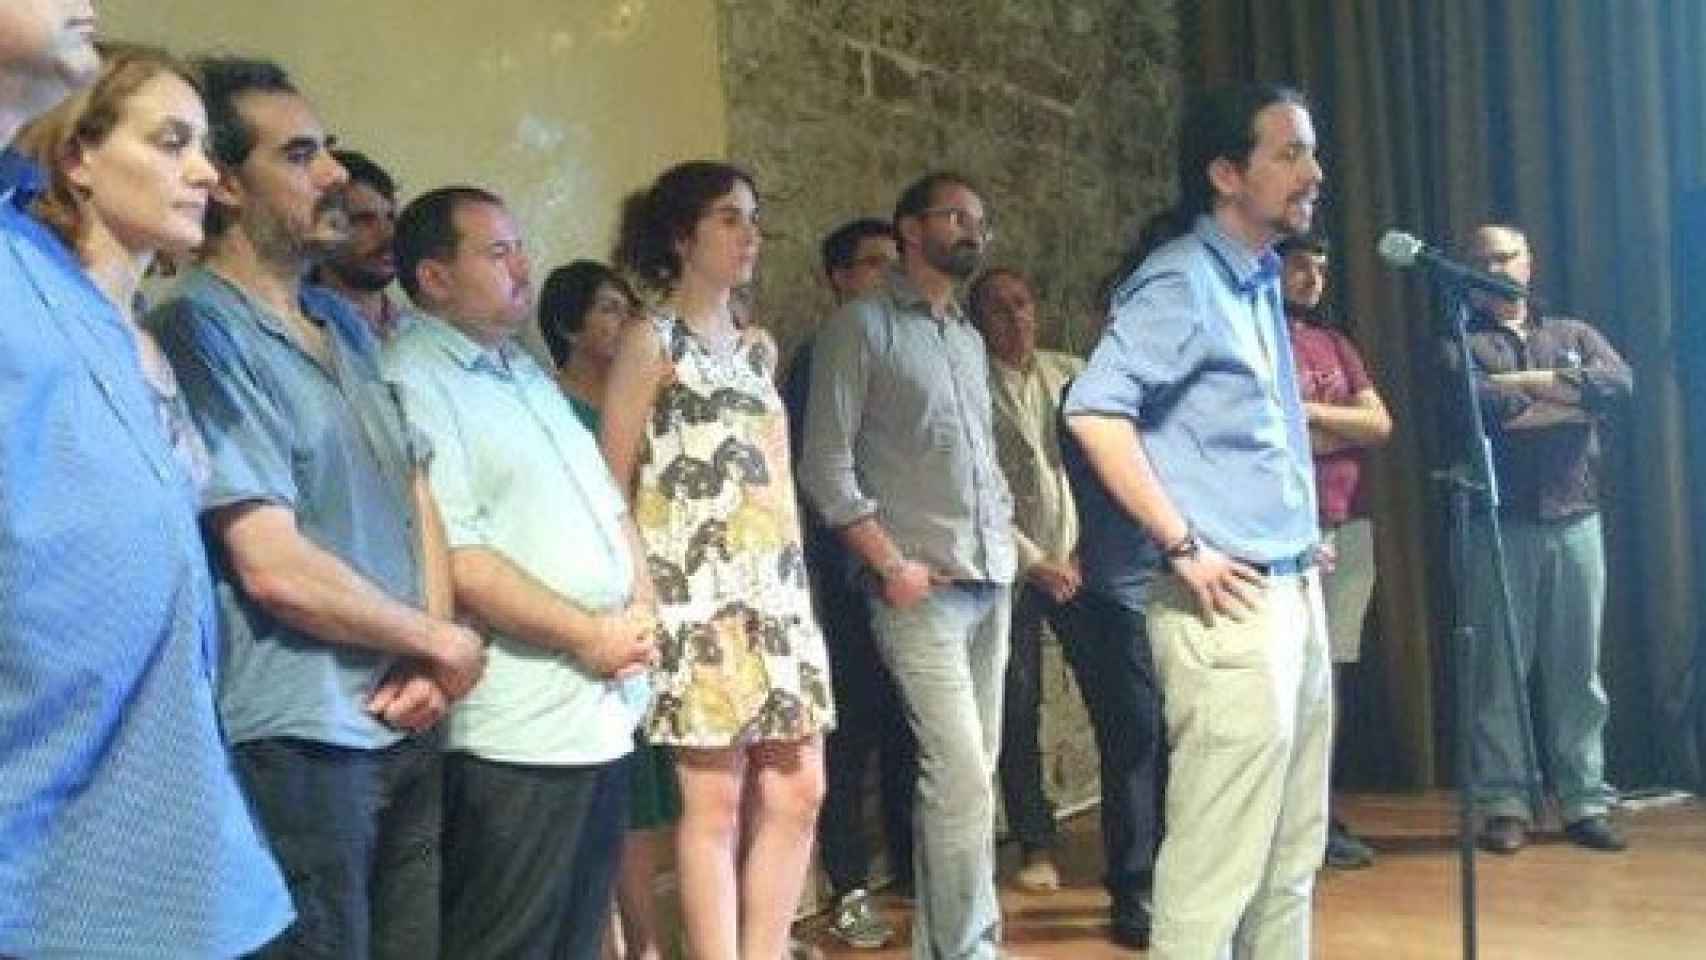 El líder de Podemos, Pablo Iglesias, en la rueda de prensa en la que ha anunciado el pacto con ICV-EUiA. Detras suyo y a la izquierda, el coordinador nacional de ICV Joan Herrera.